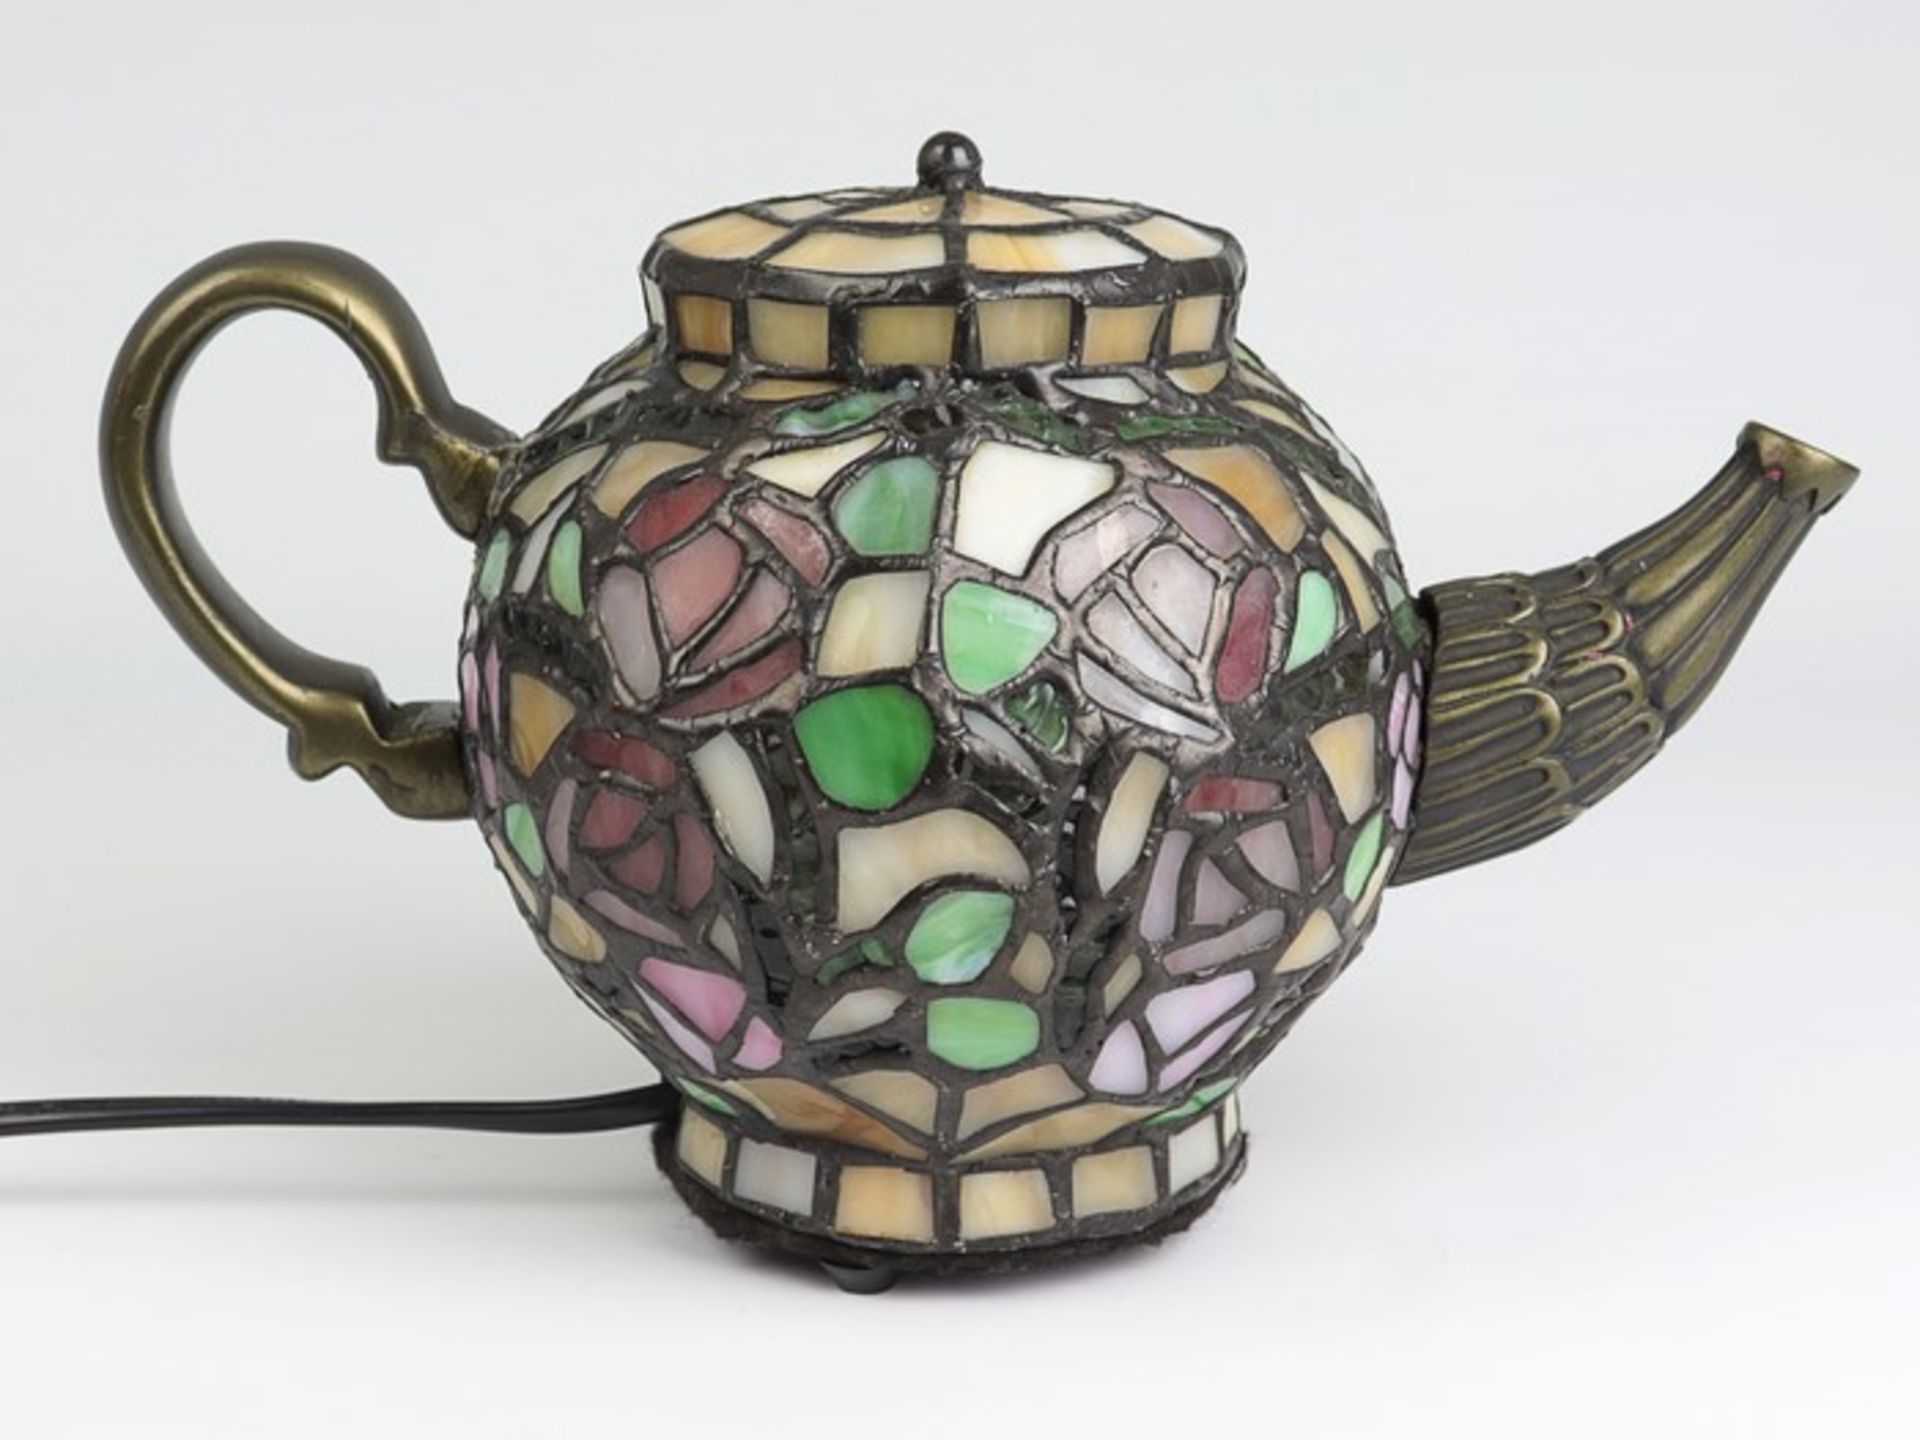 Tischlampe - Tiffany-Stilbronzefarbenes Metall/Bleiglas, einflammig, ausgeformt als vollplastische